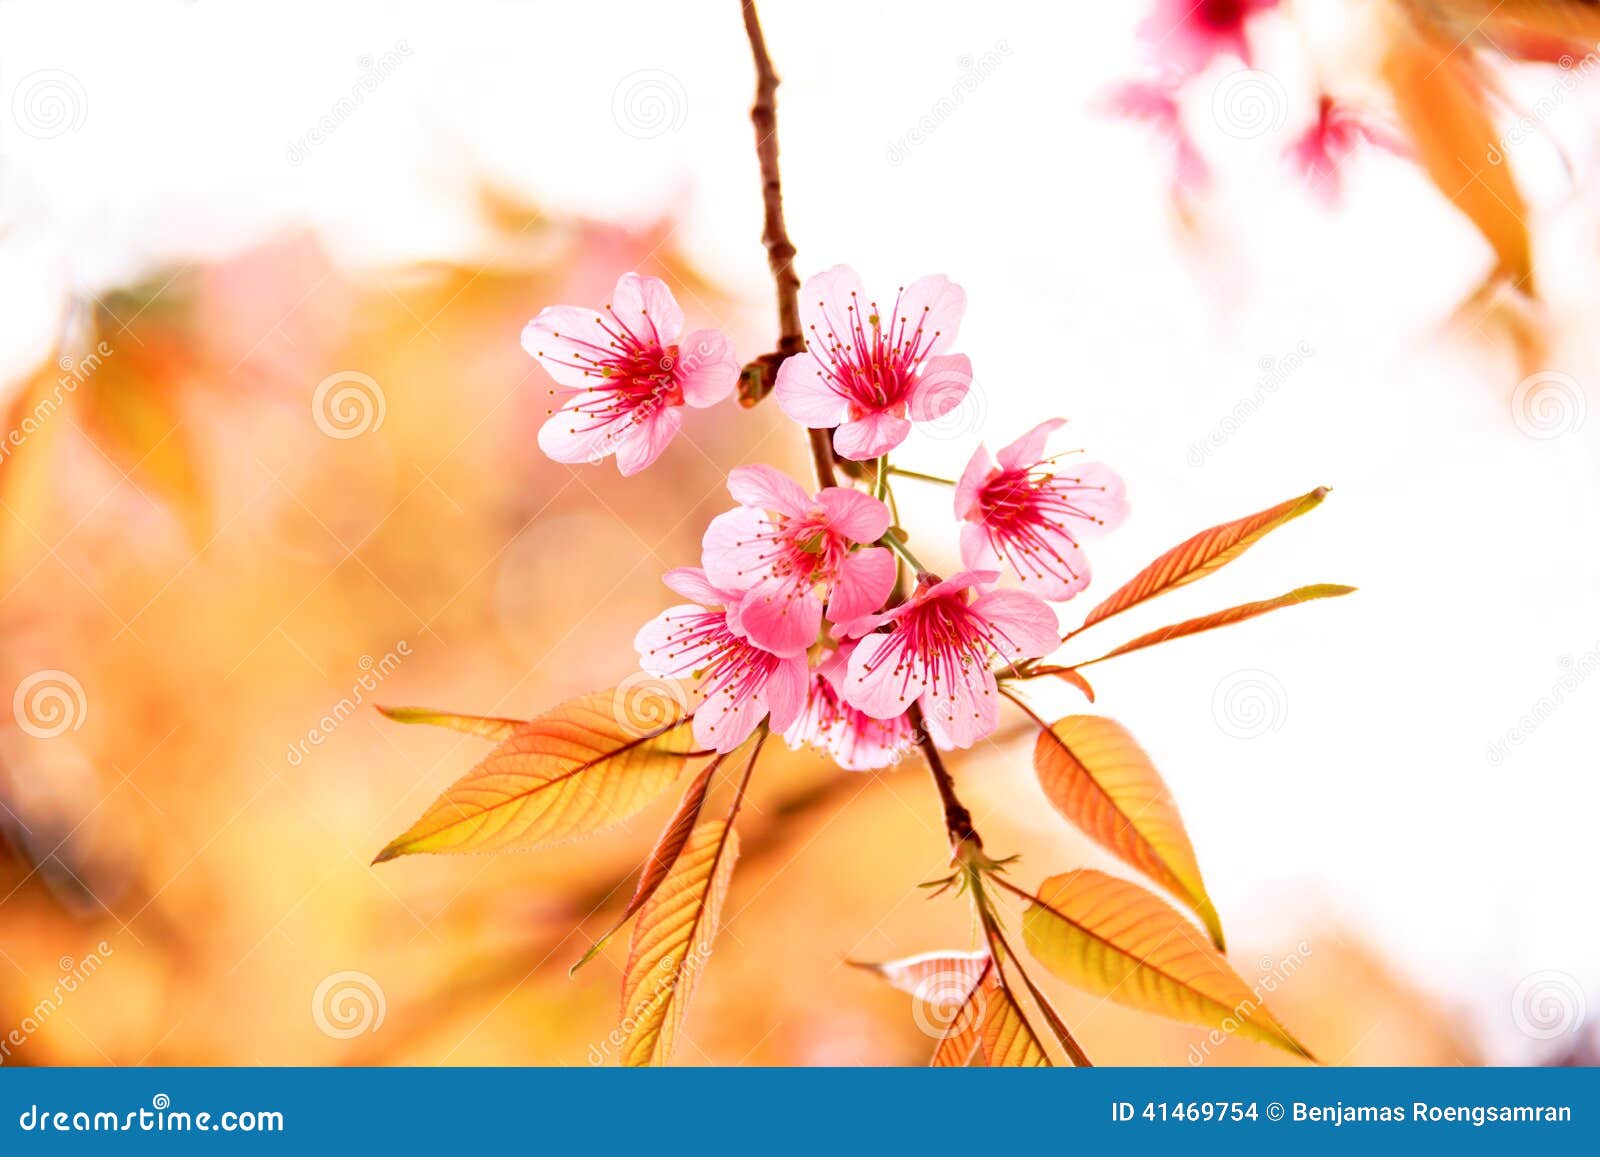 pink flowers in thailand, prunus cerasoides, rosaceae, prunus,